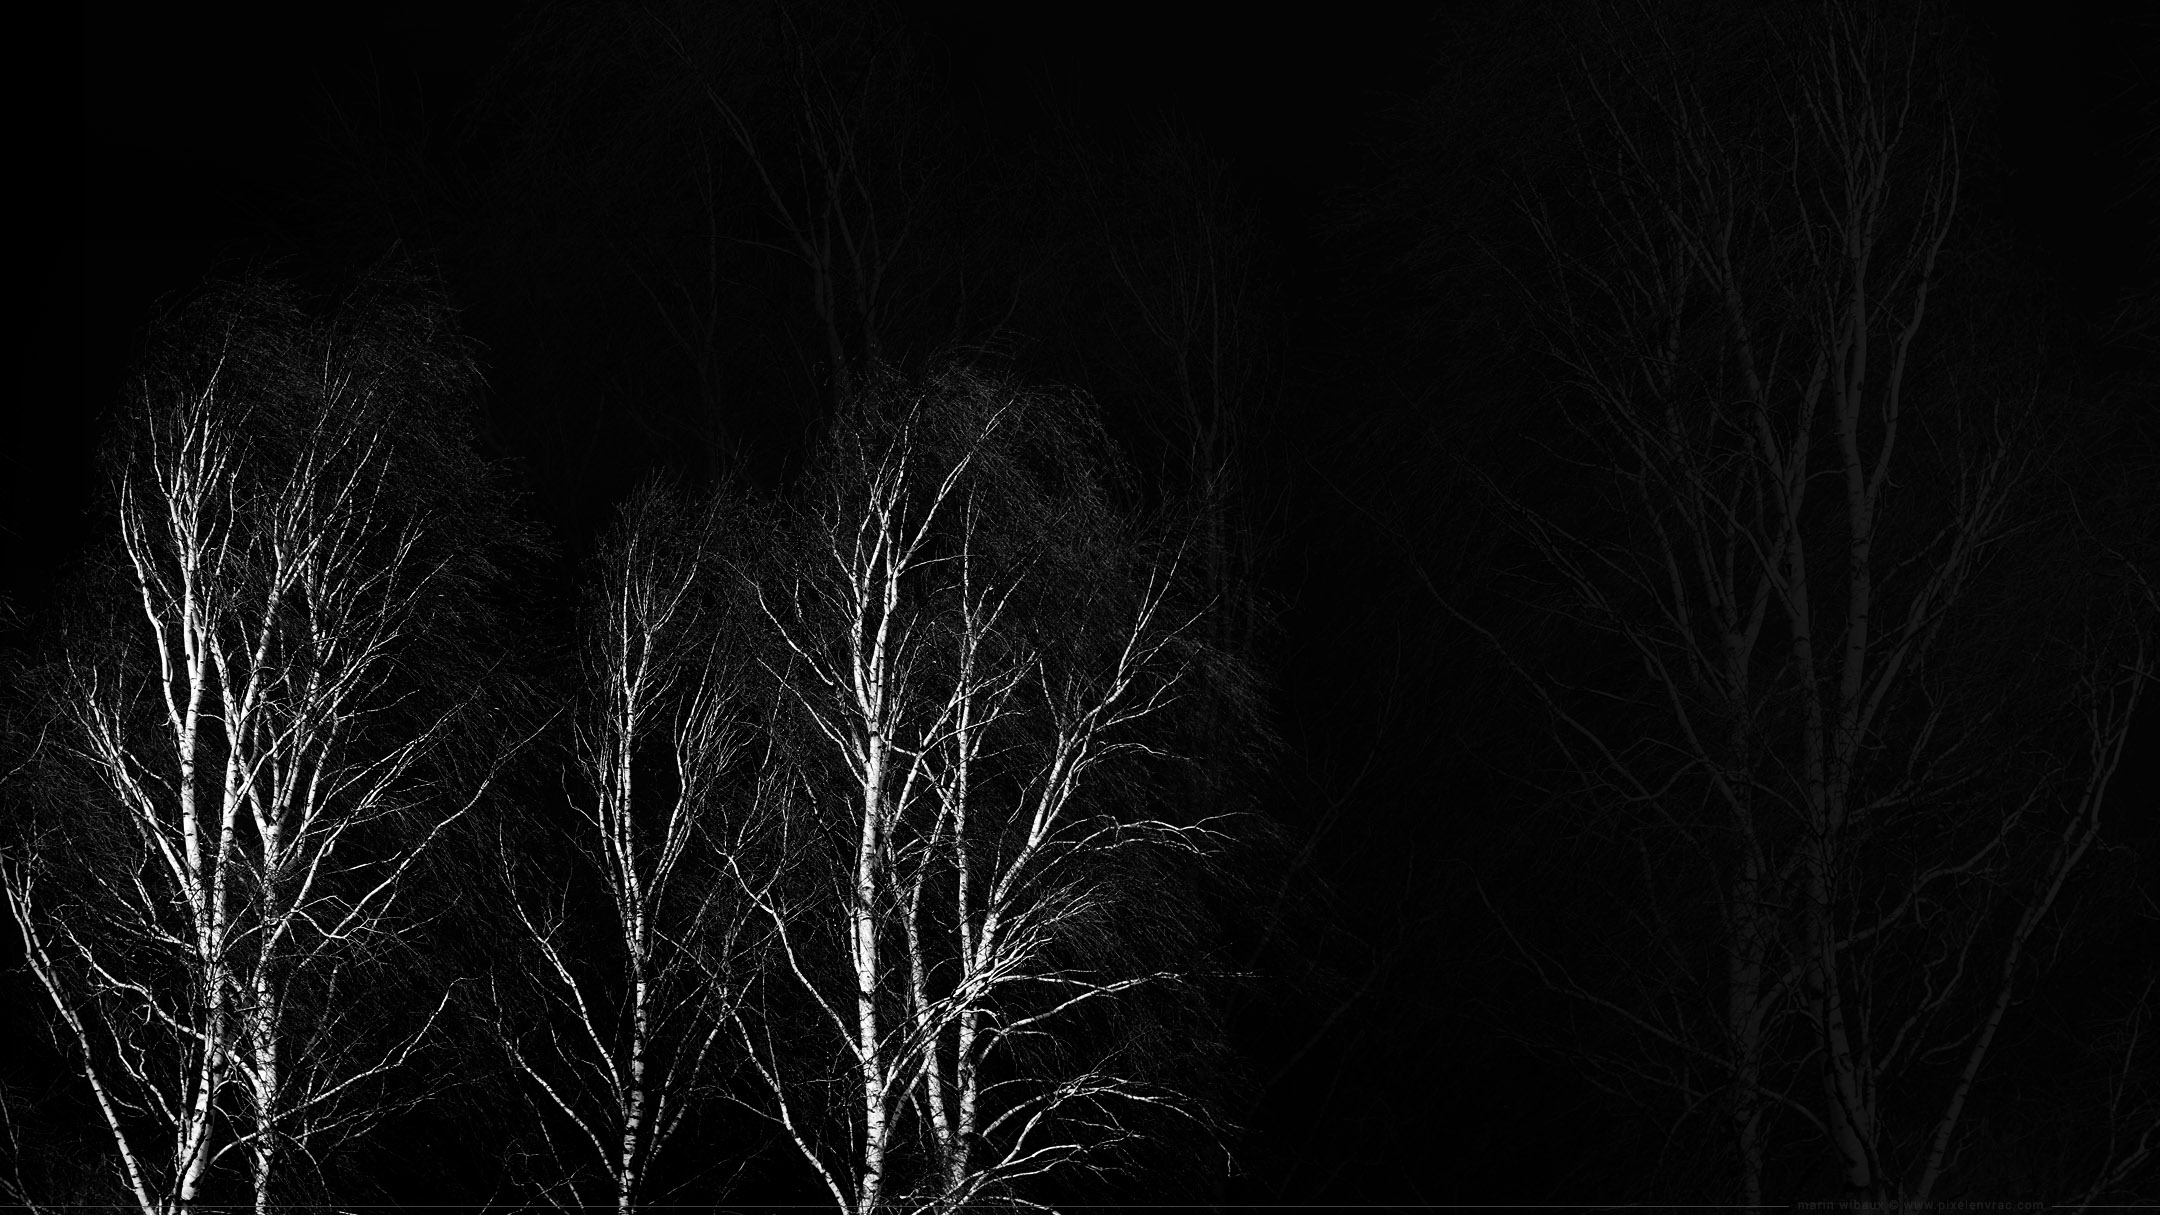 Wallpaper noir et blanc : photo d'arbres et de ramures sur fond noir